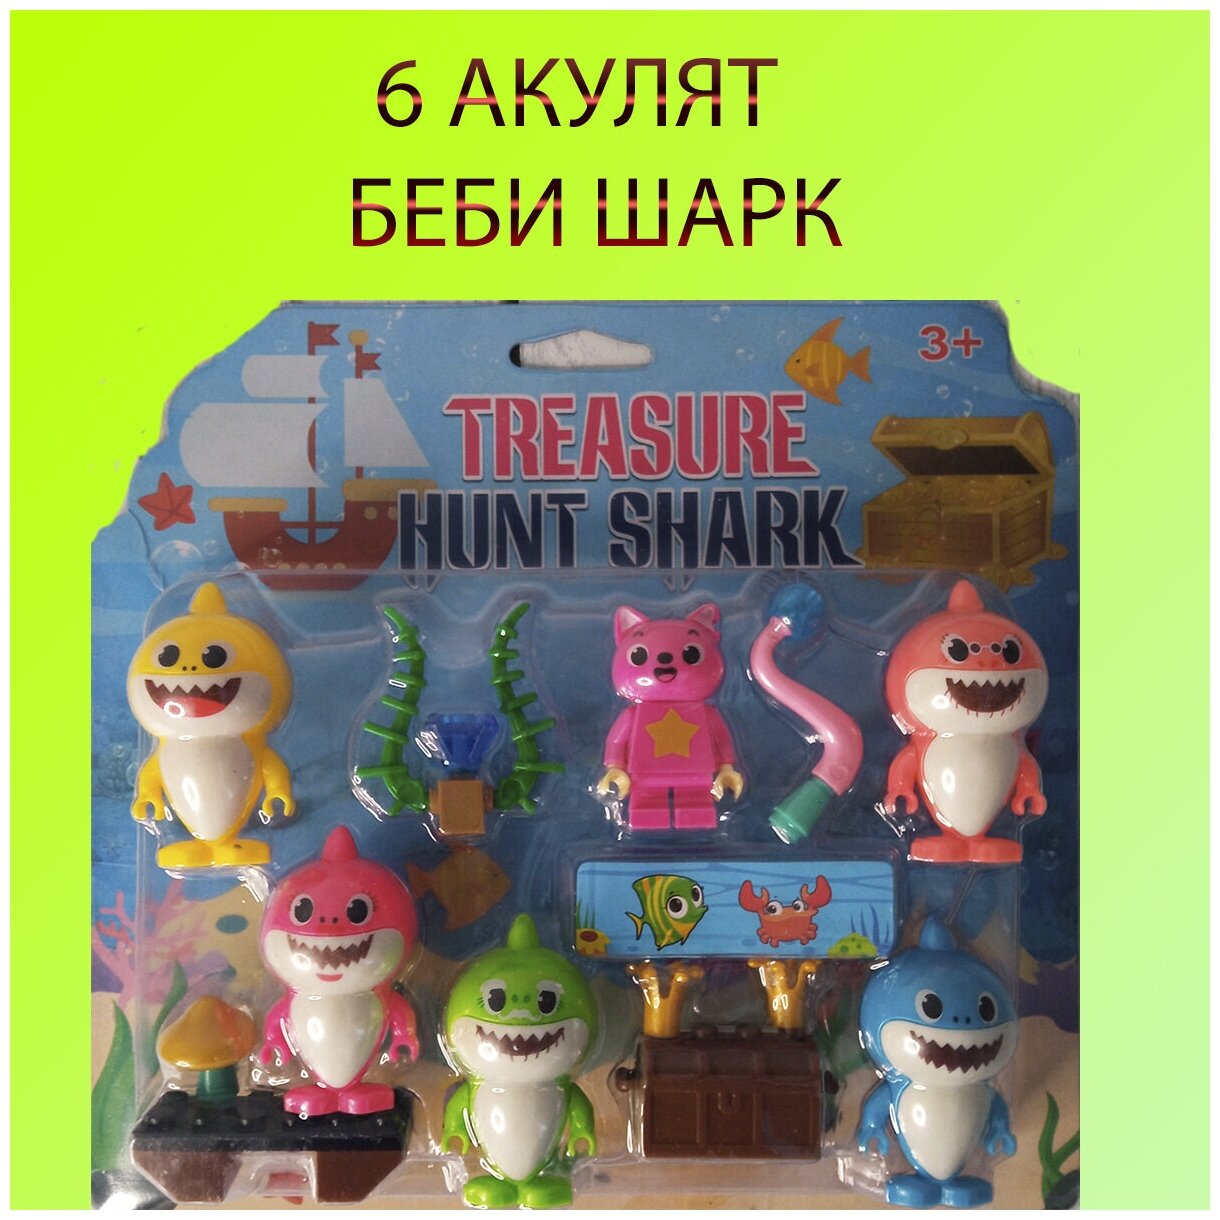 Беби шарк 6 фигурок морские животные фигурки подводный мир игрушки